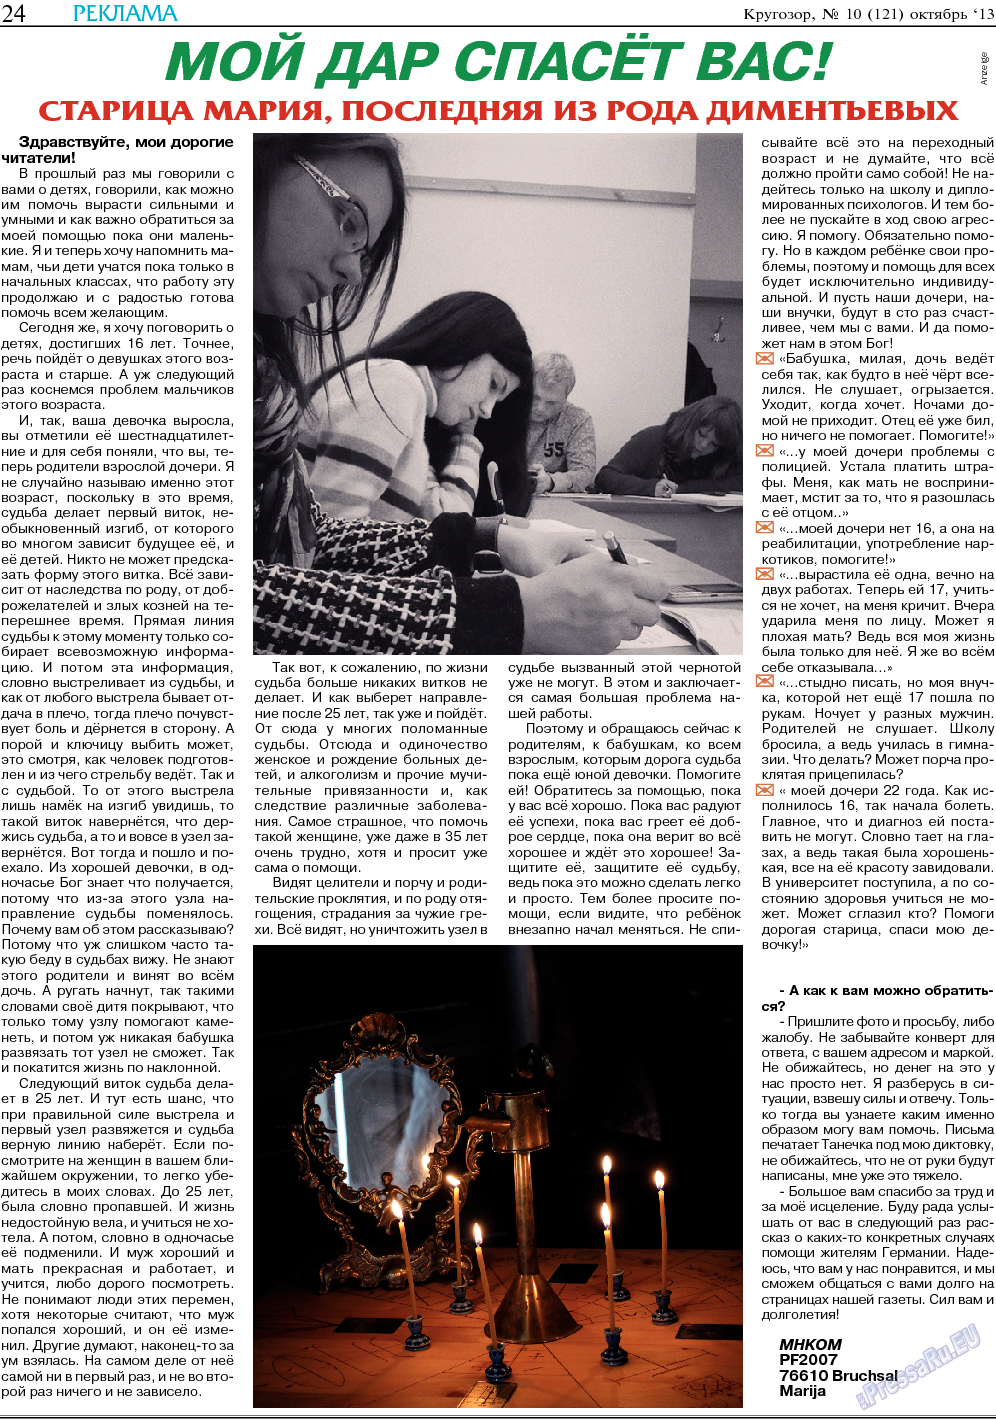 Кругозор, газета. 2013 №10 стр.24